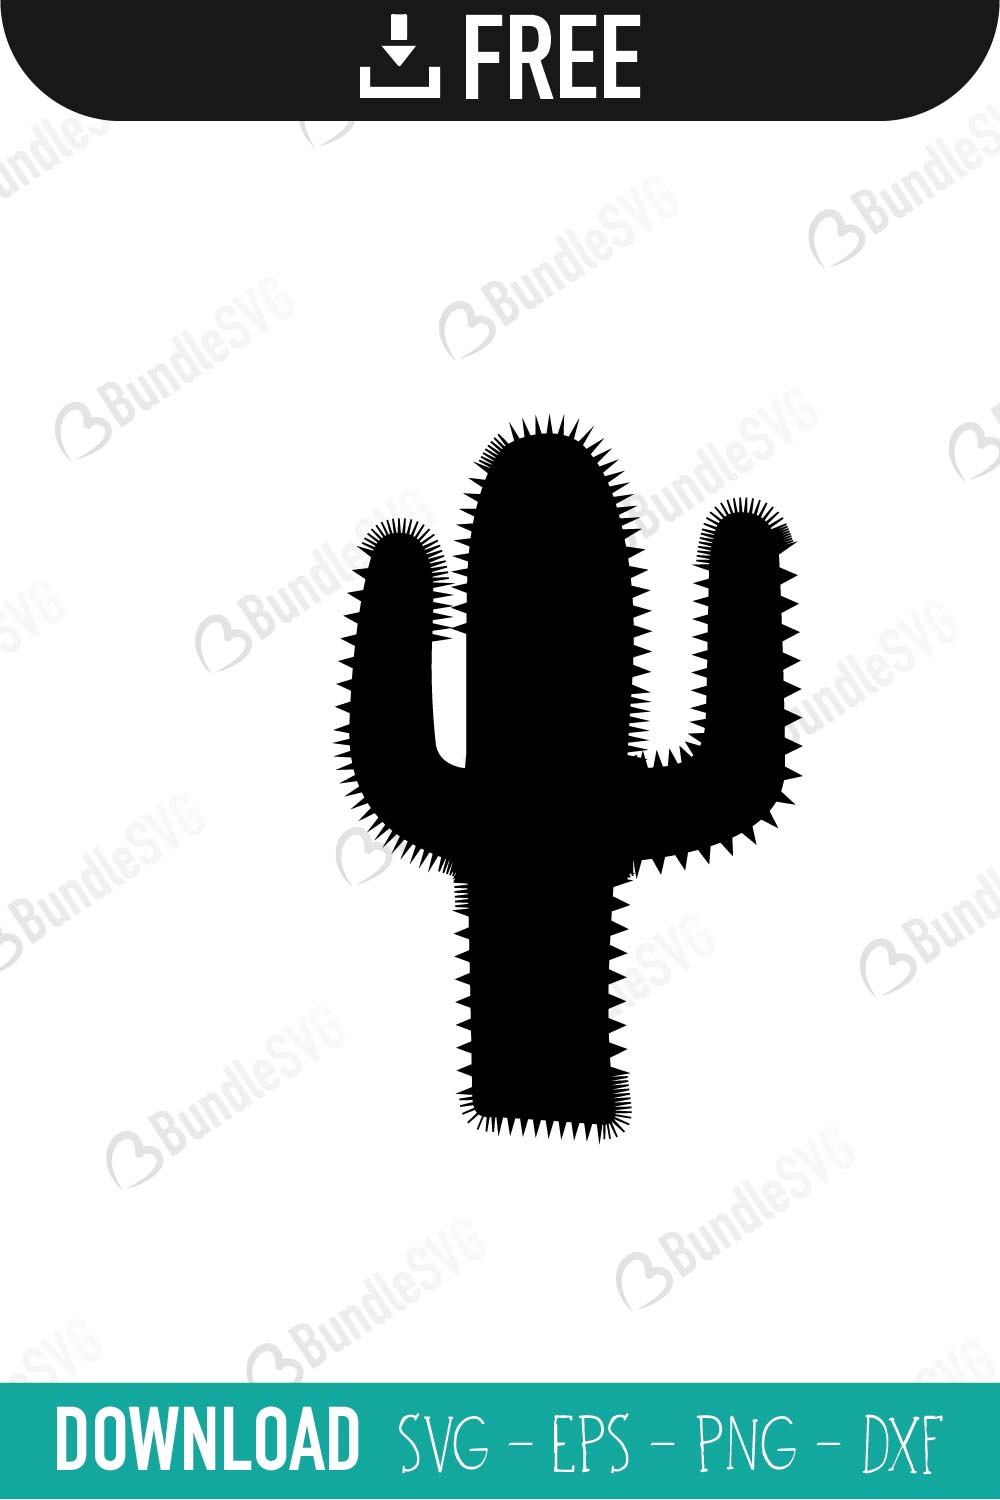 Cactus SVG Free SVG Download | BundleSVG